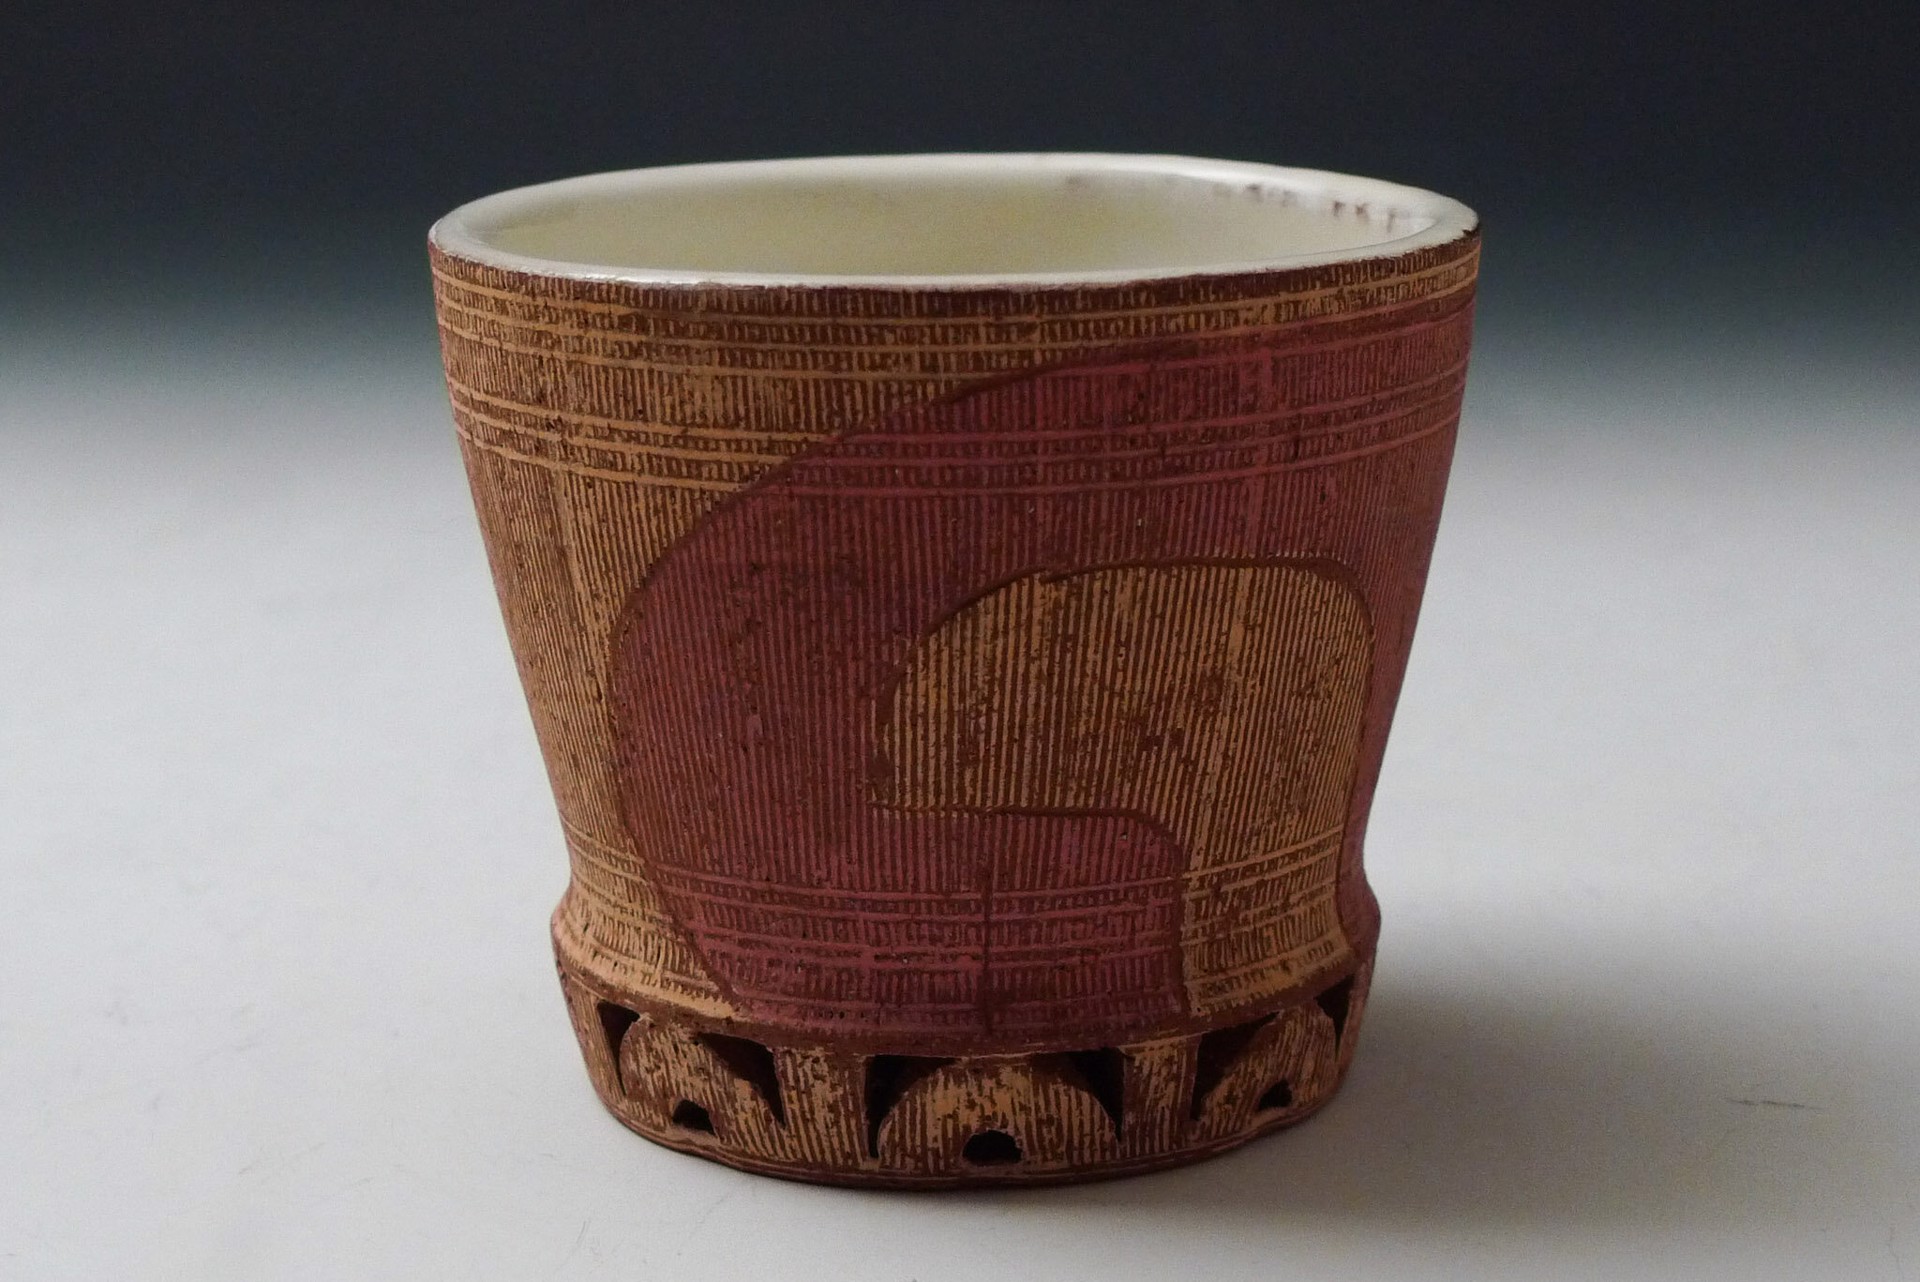 Cup by Matt Repsher